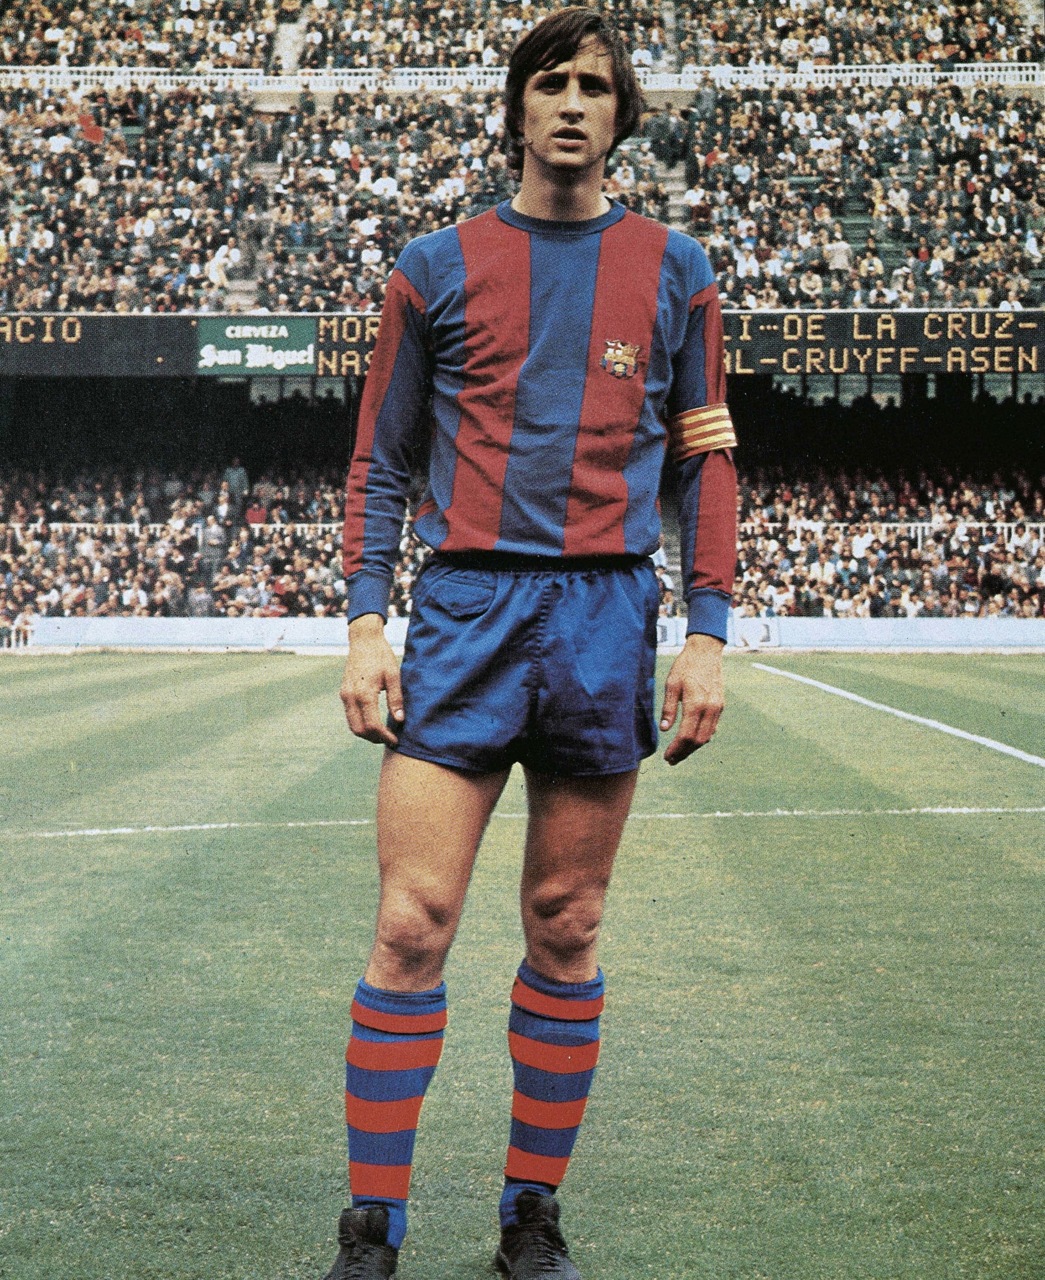 johan-cruyff-1978.jpg